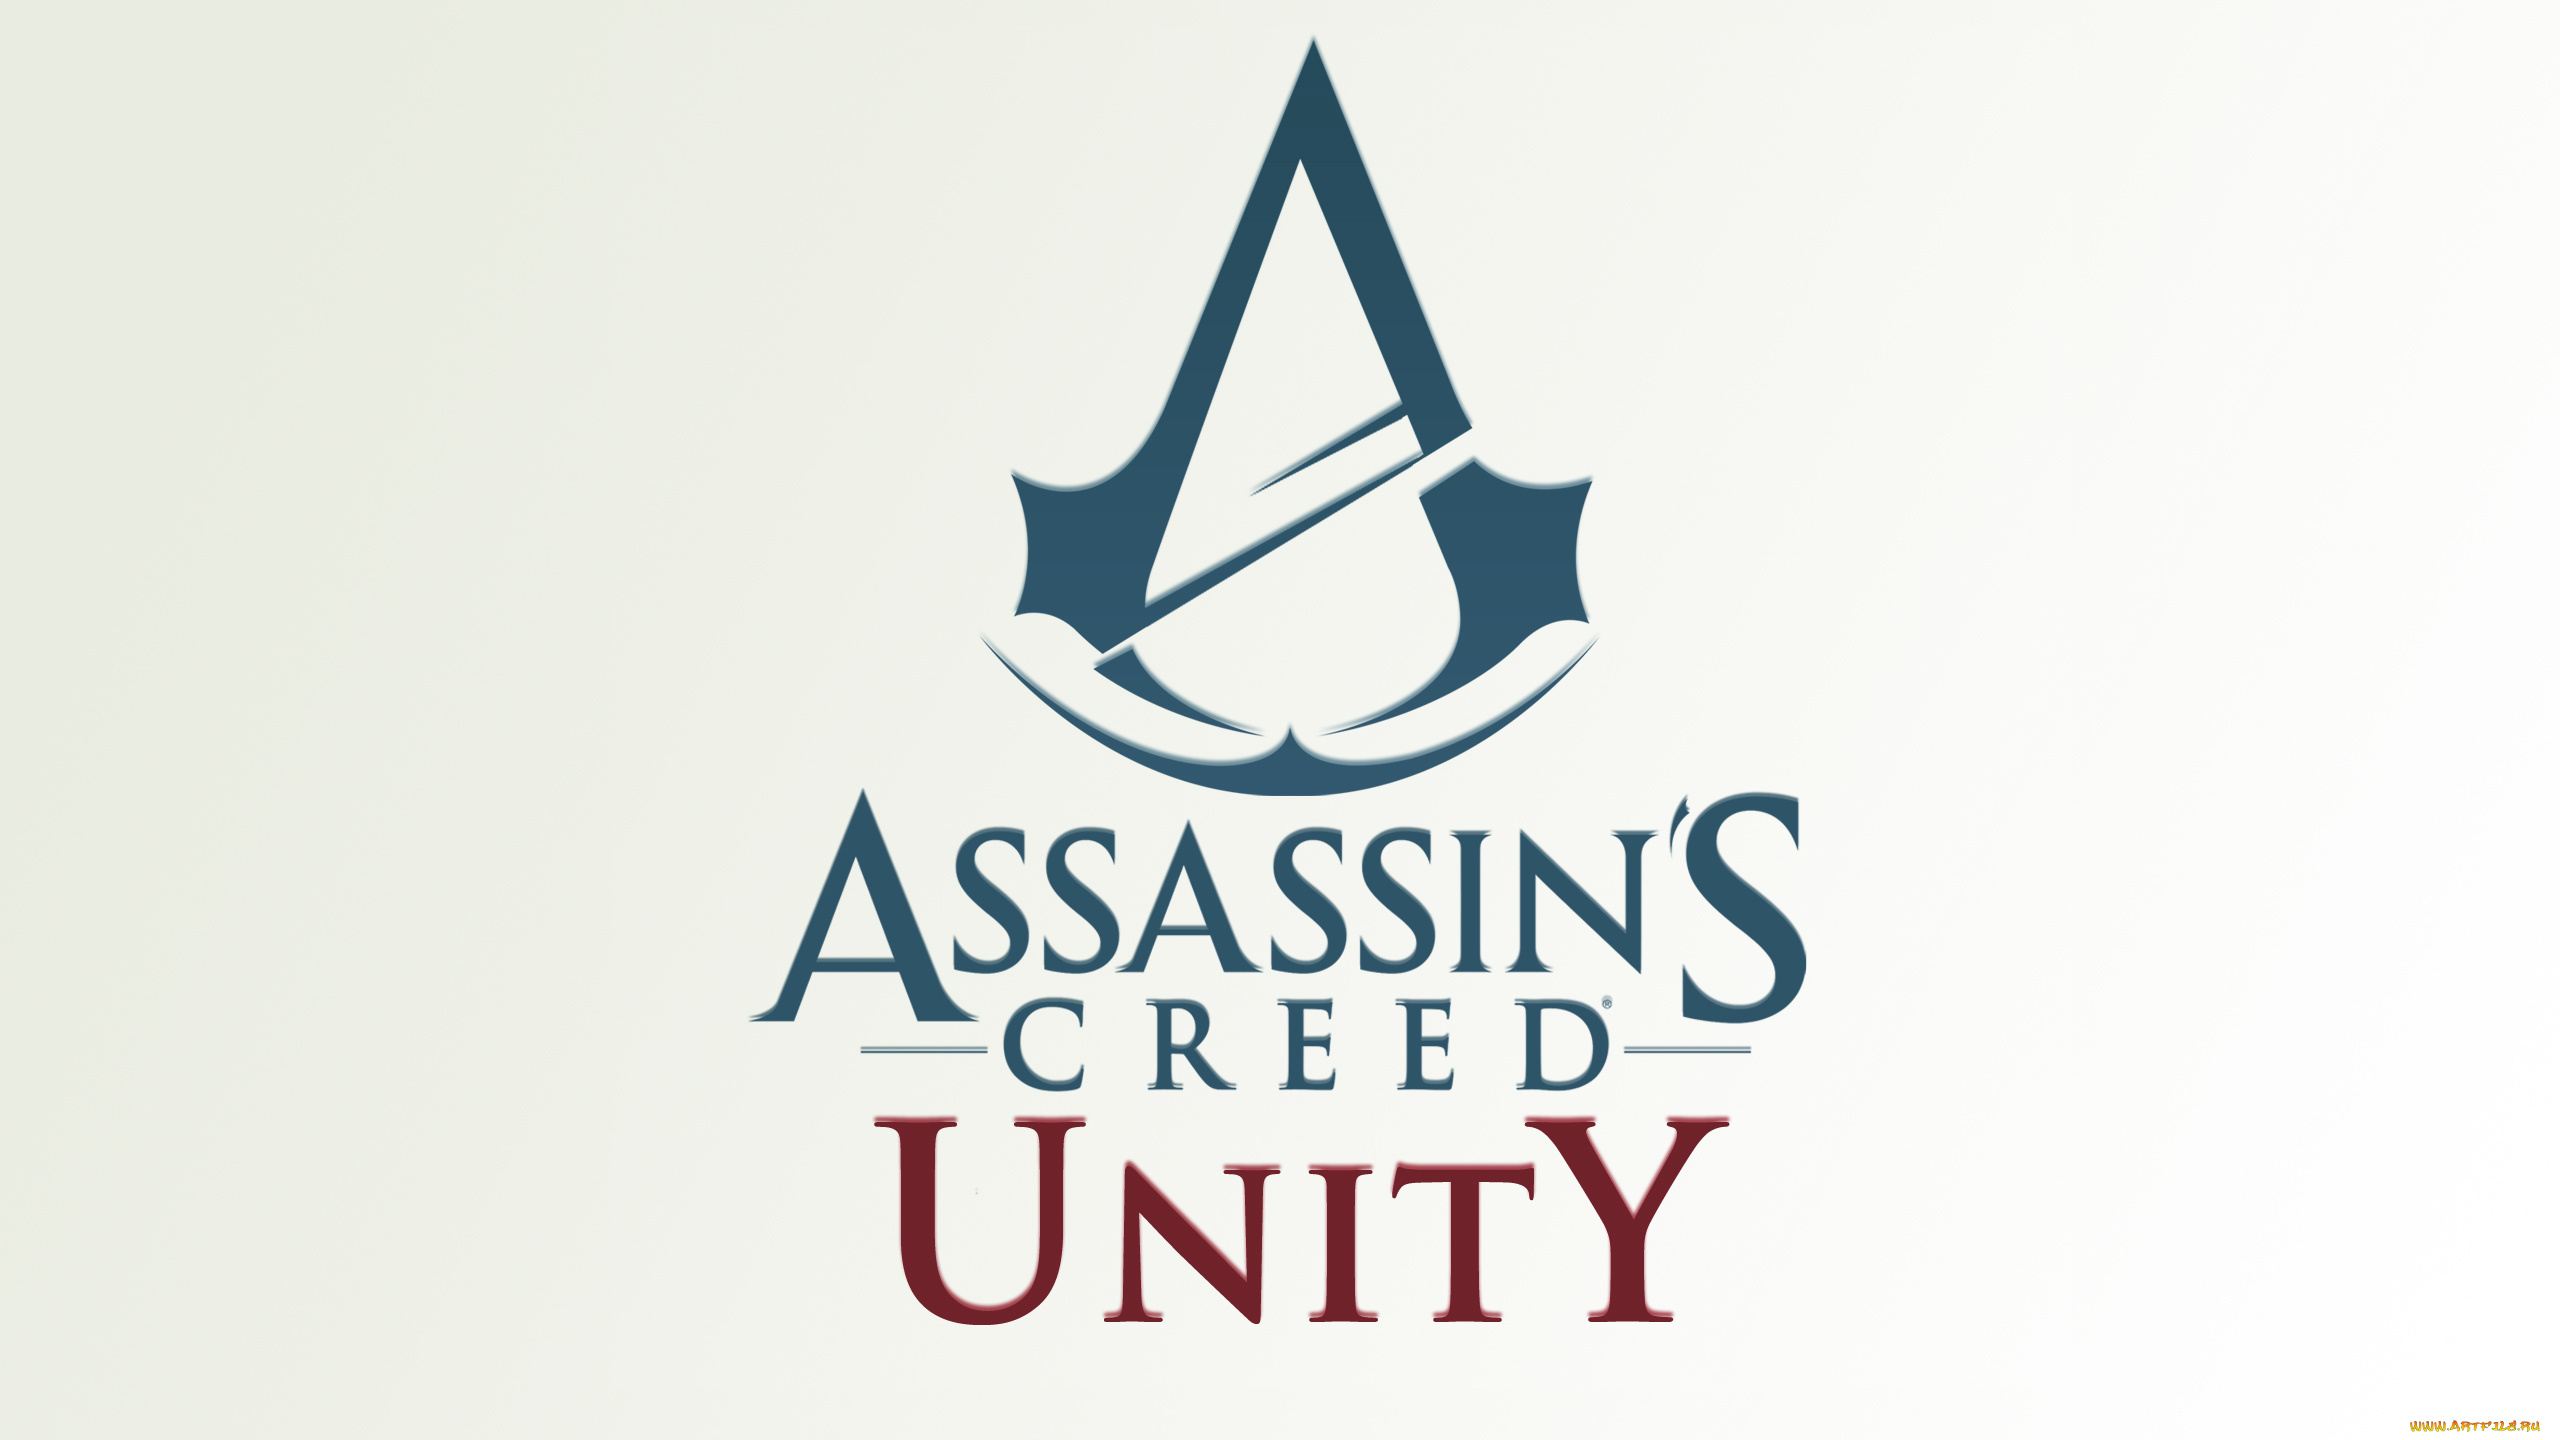 видео, игры, -, assassin`s, creed, unity, assassins, логотип, экшен, игра, unity, creed